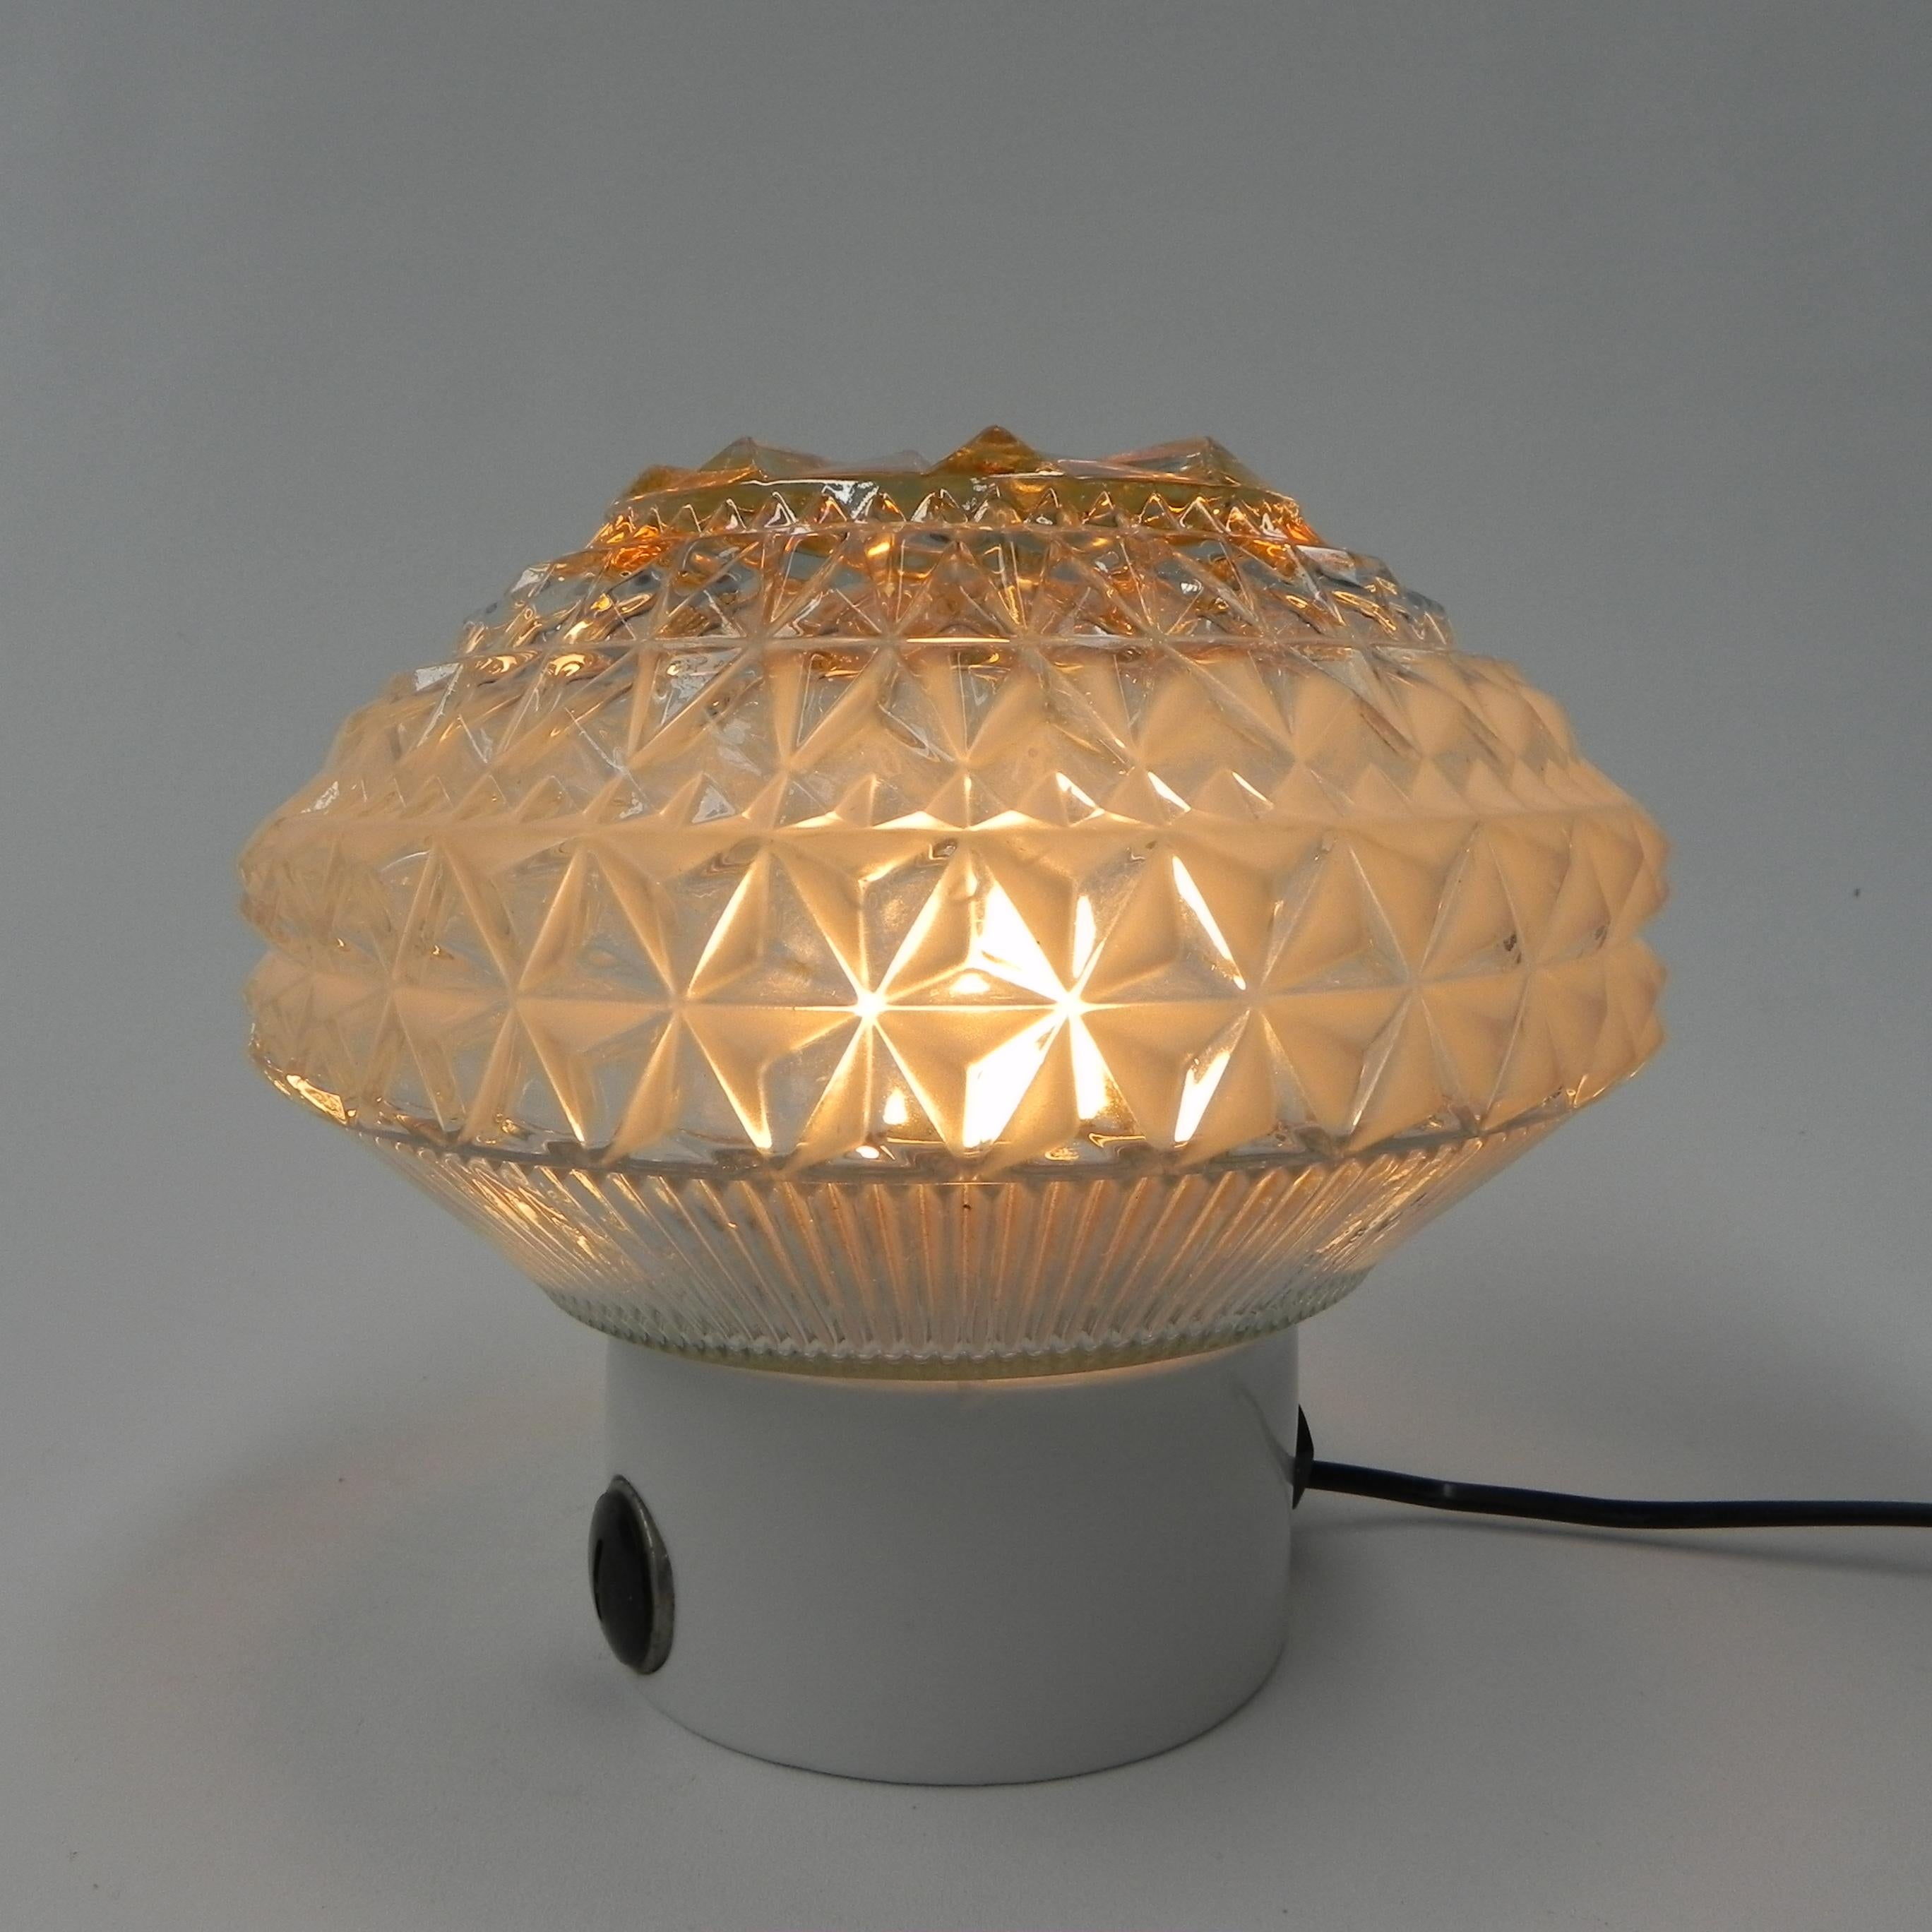 Hauteur : 21 cm.
diamètre : 20 cm.
La lampe est équipée d'une grande douille (E27).
Origine : Allemagne, années 1960.
Matériau : verre / porcelaine.
Toutes nos lampes sont adaptées aux lampes LED.